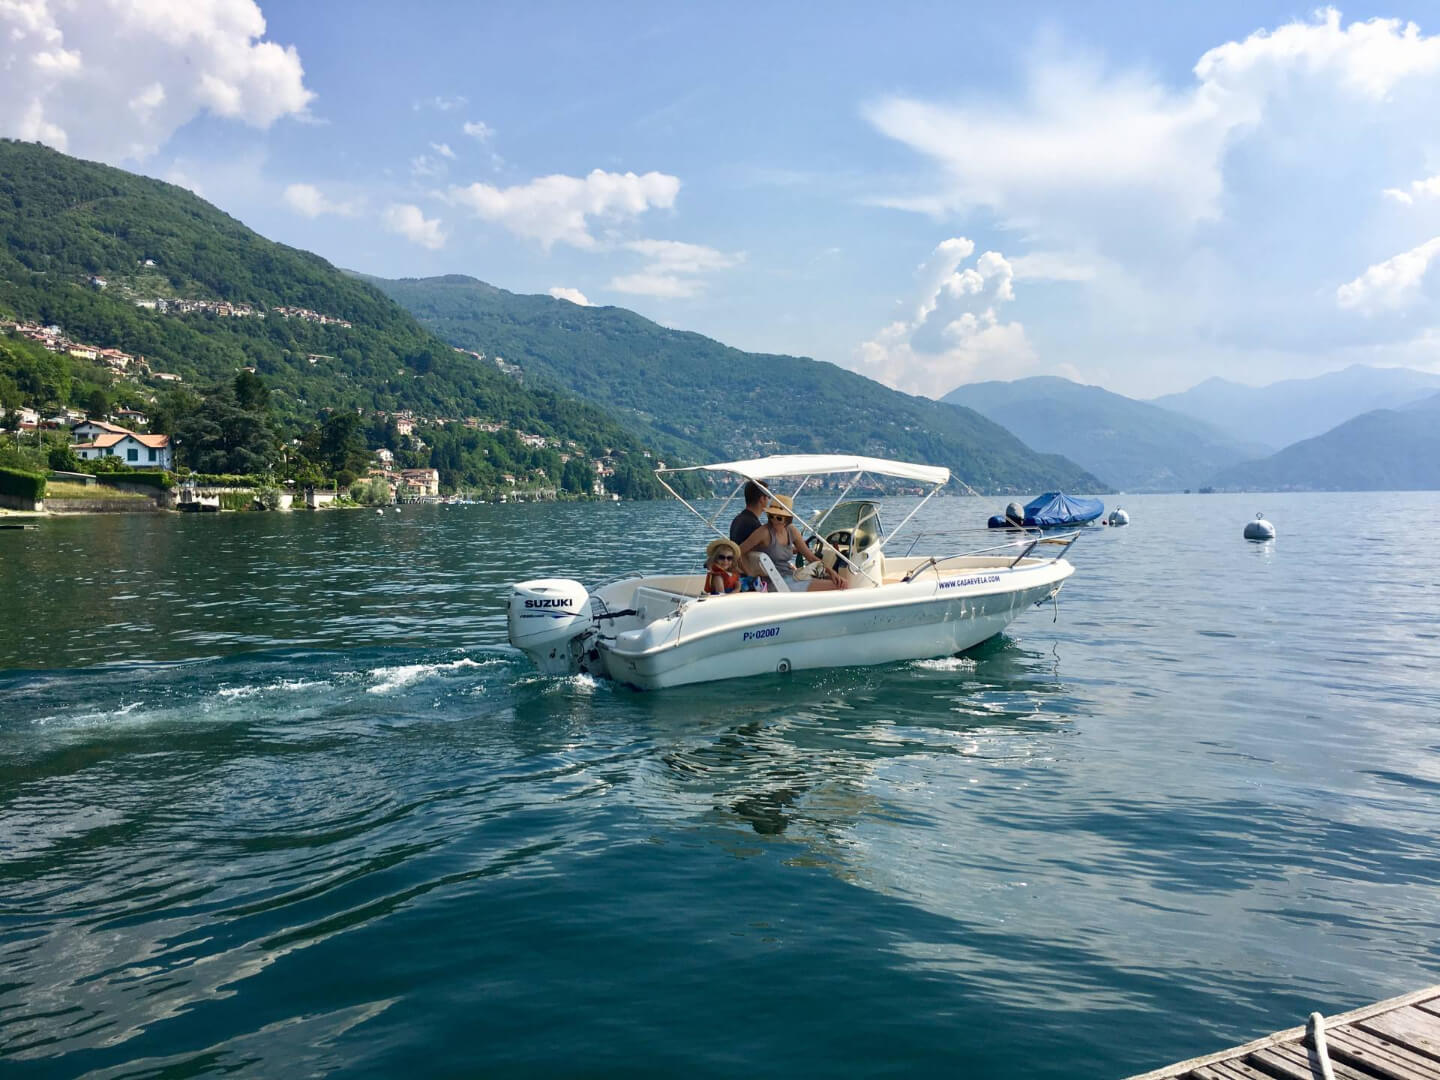 Bootverleih - Erkunde den Lago Maggiore auf eigene Faust